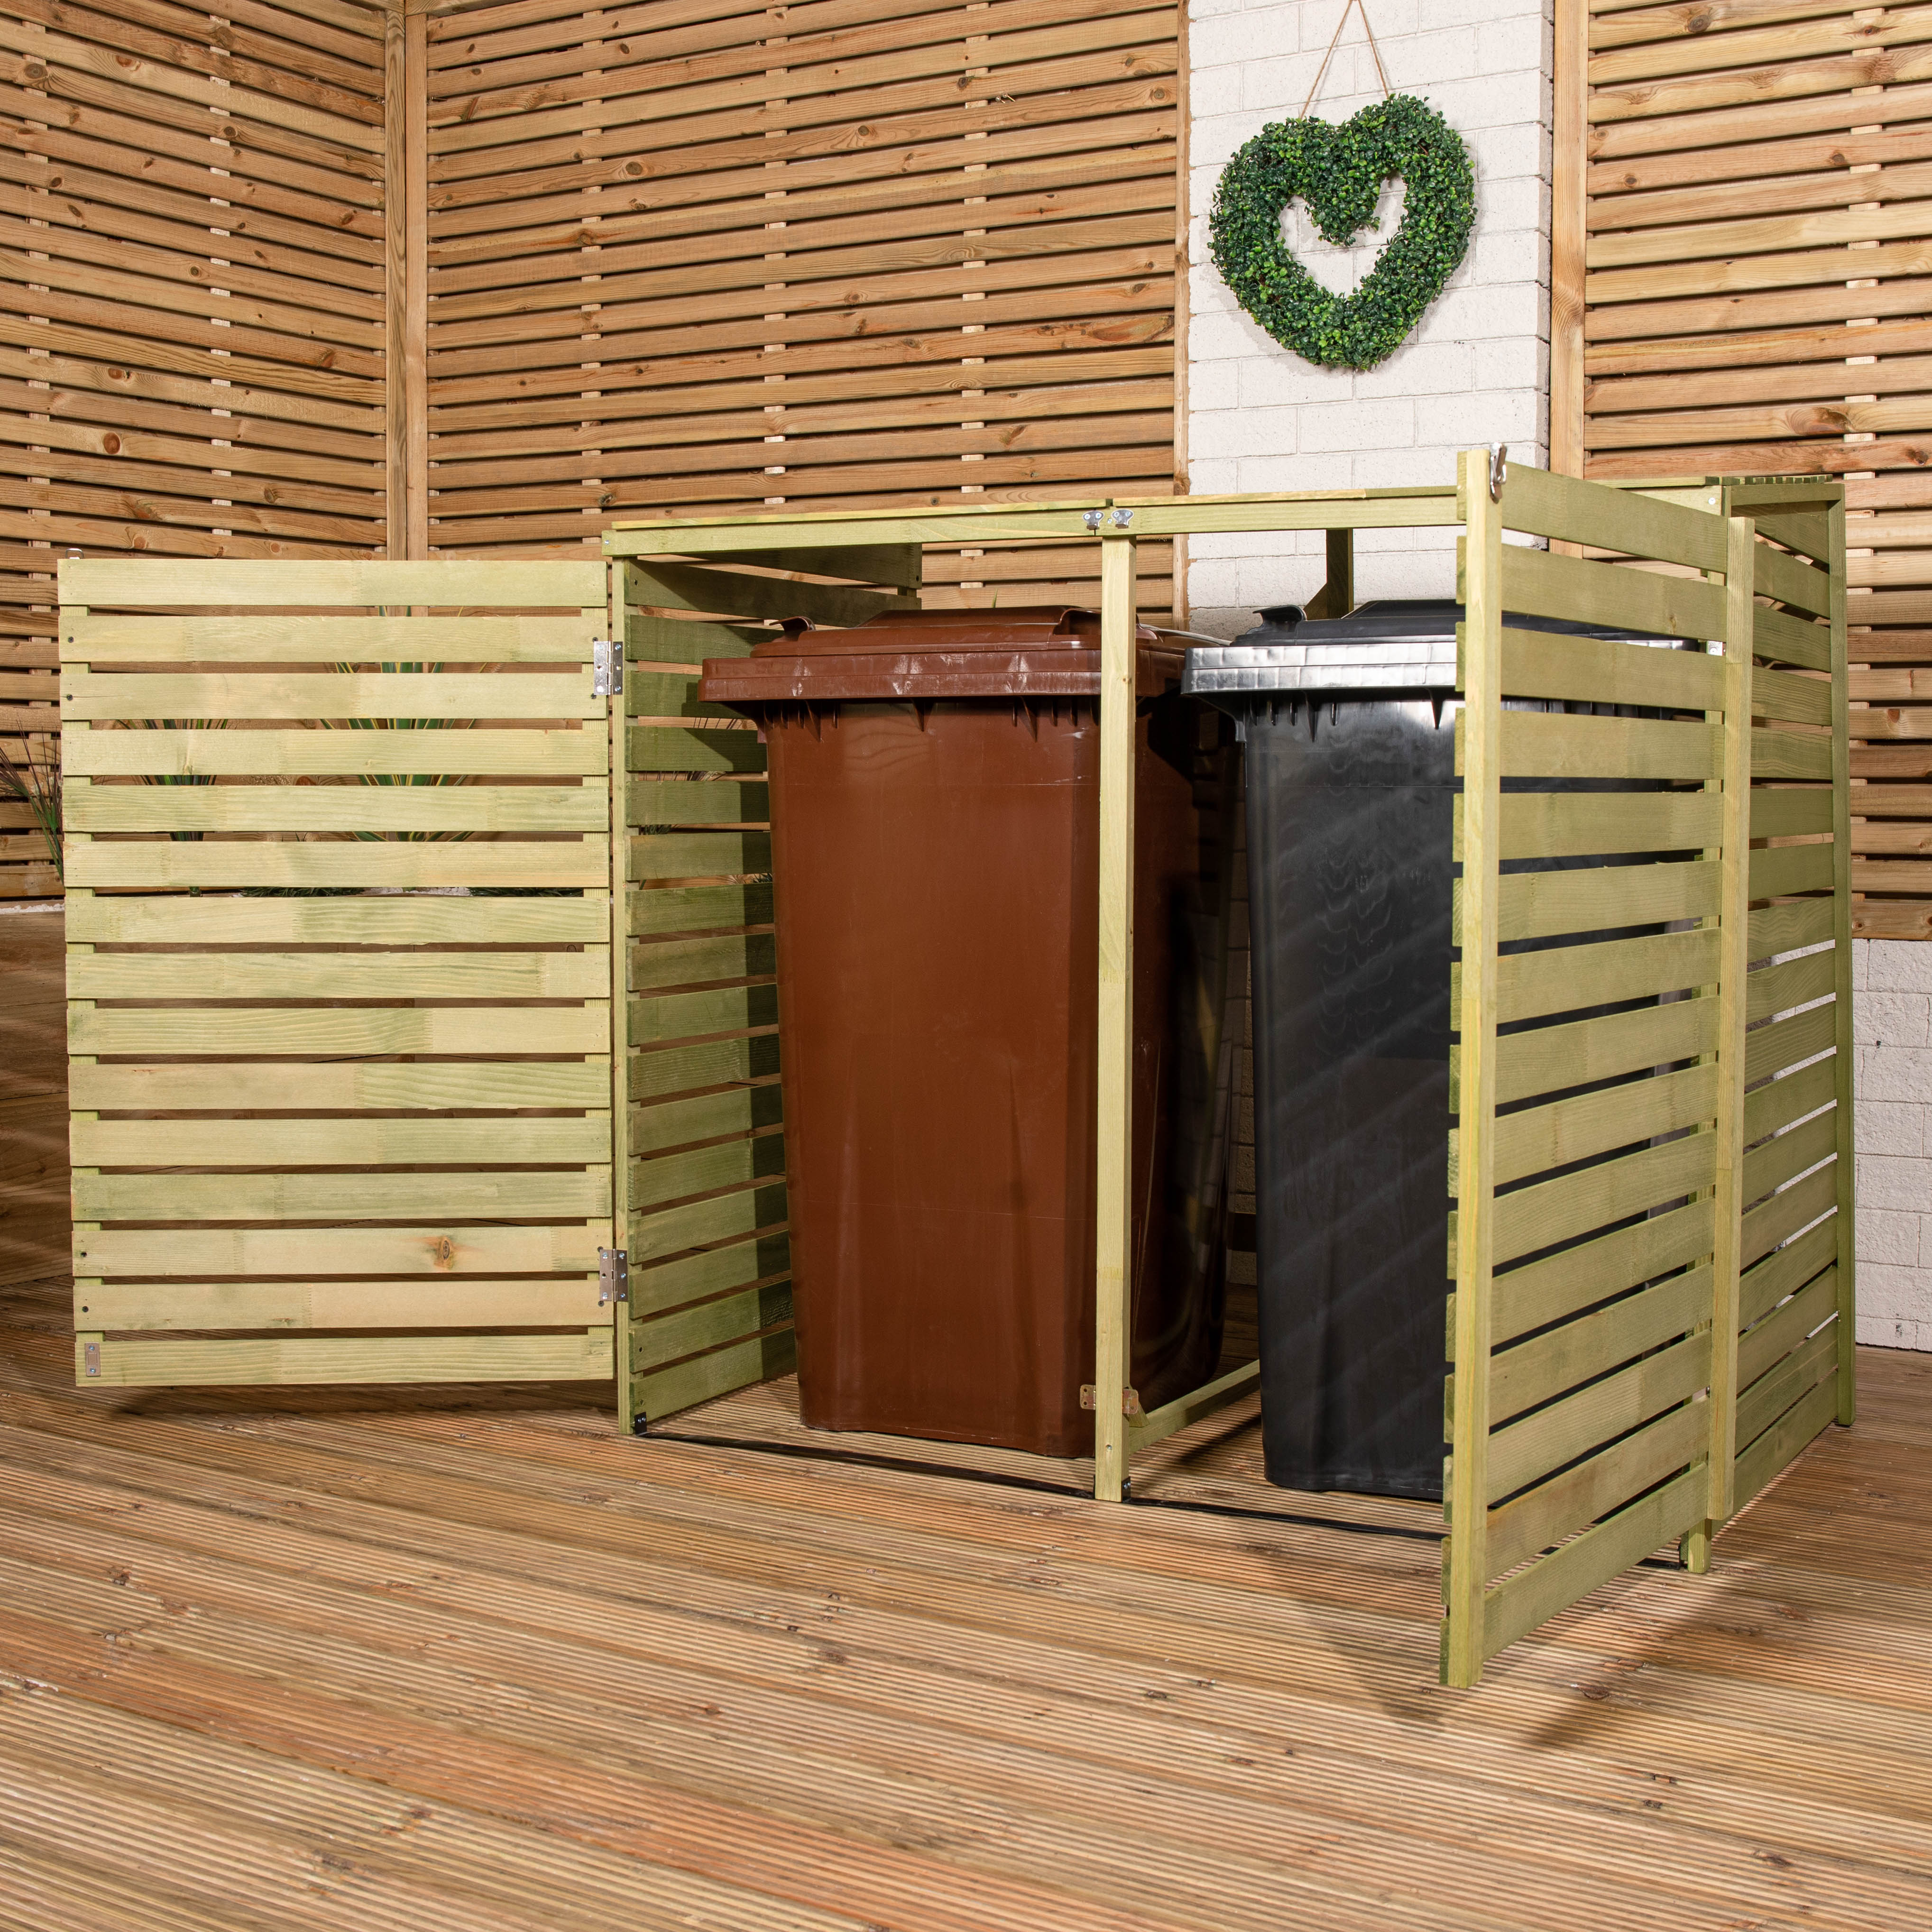 1.34m x 1.2m Large Wooden Outdoor Garden Double Wheelie Bin Store Storage for 2 Bins